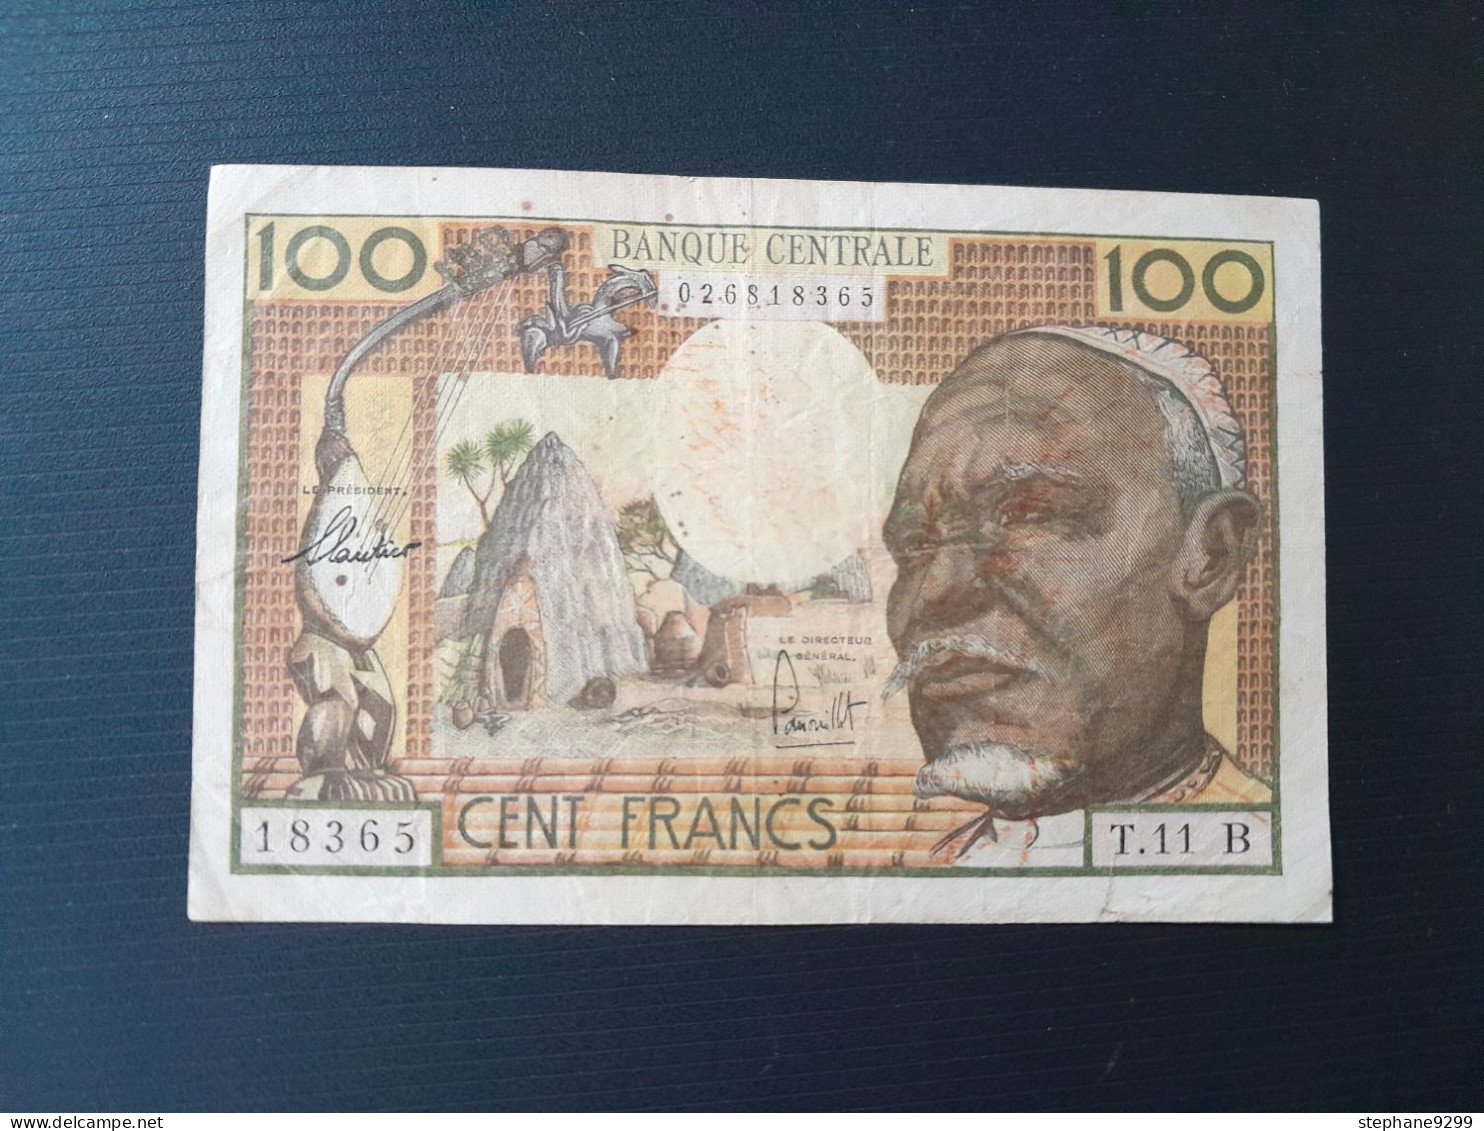 AFRIQUE EQUATORIALE 100 FRANCS 1963.LETTRE A.RARE - Altri – Africa